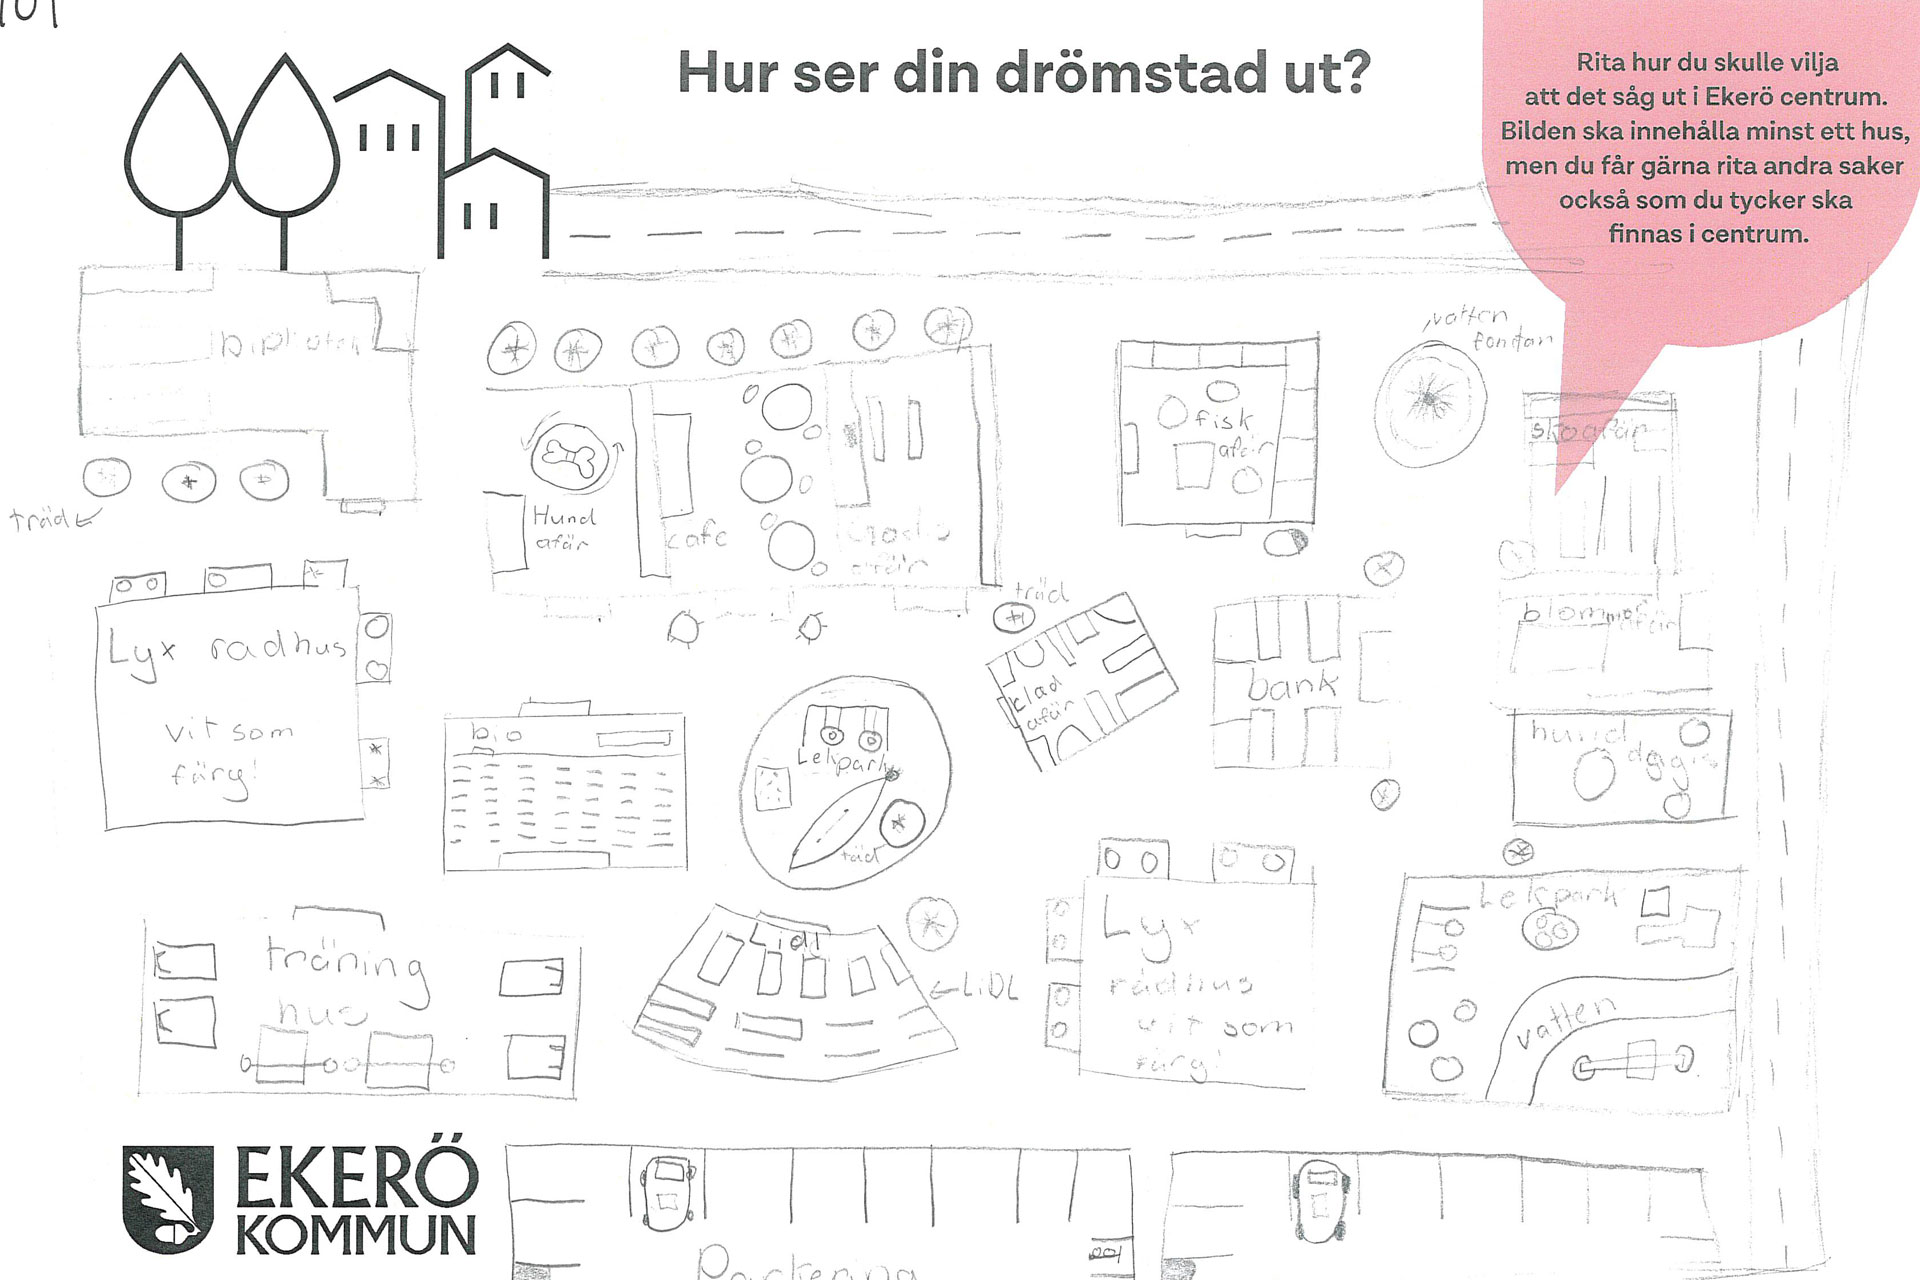 Teckning ritad av barn hur de vill att Ekerö centrum ska se ut. Hus och affärer i flera färger. 